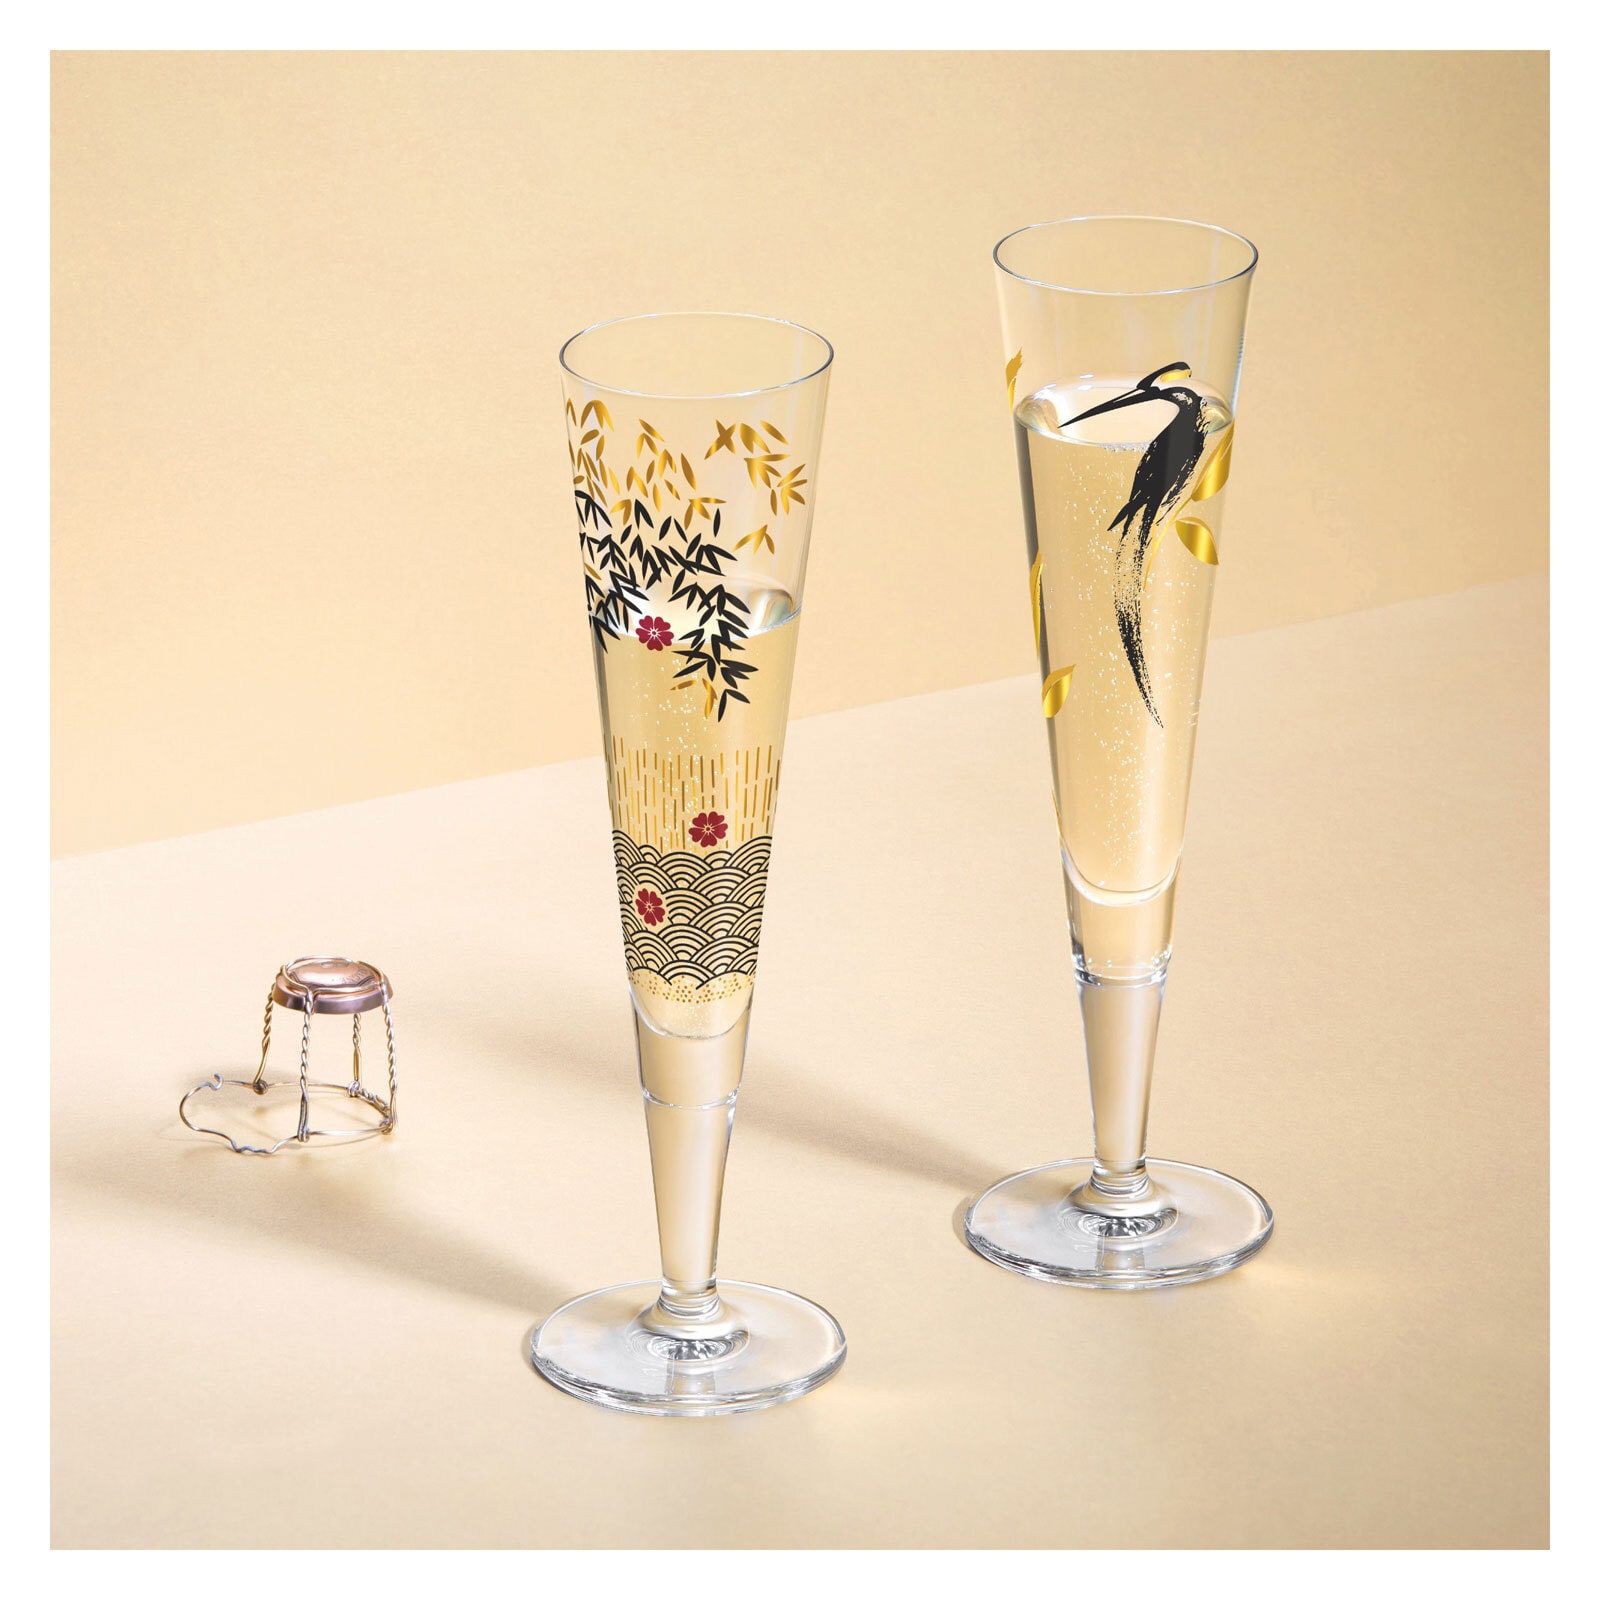 RITZENHOFF Champagnerglas GOLDNACHT A. ARNOLT